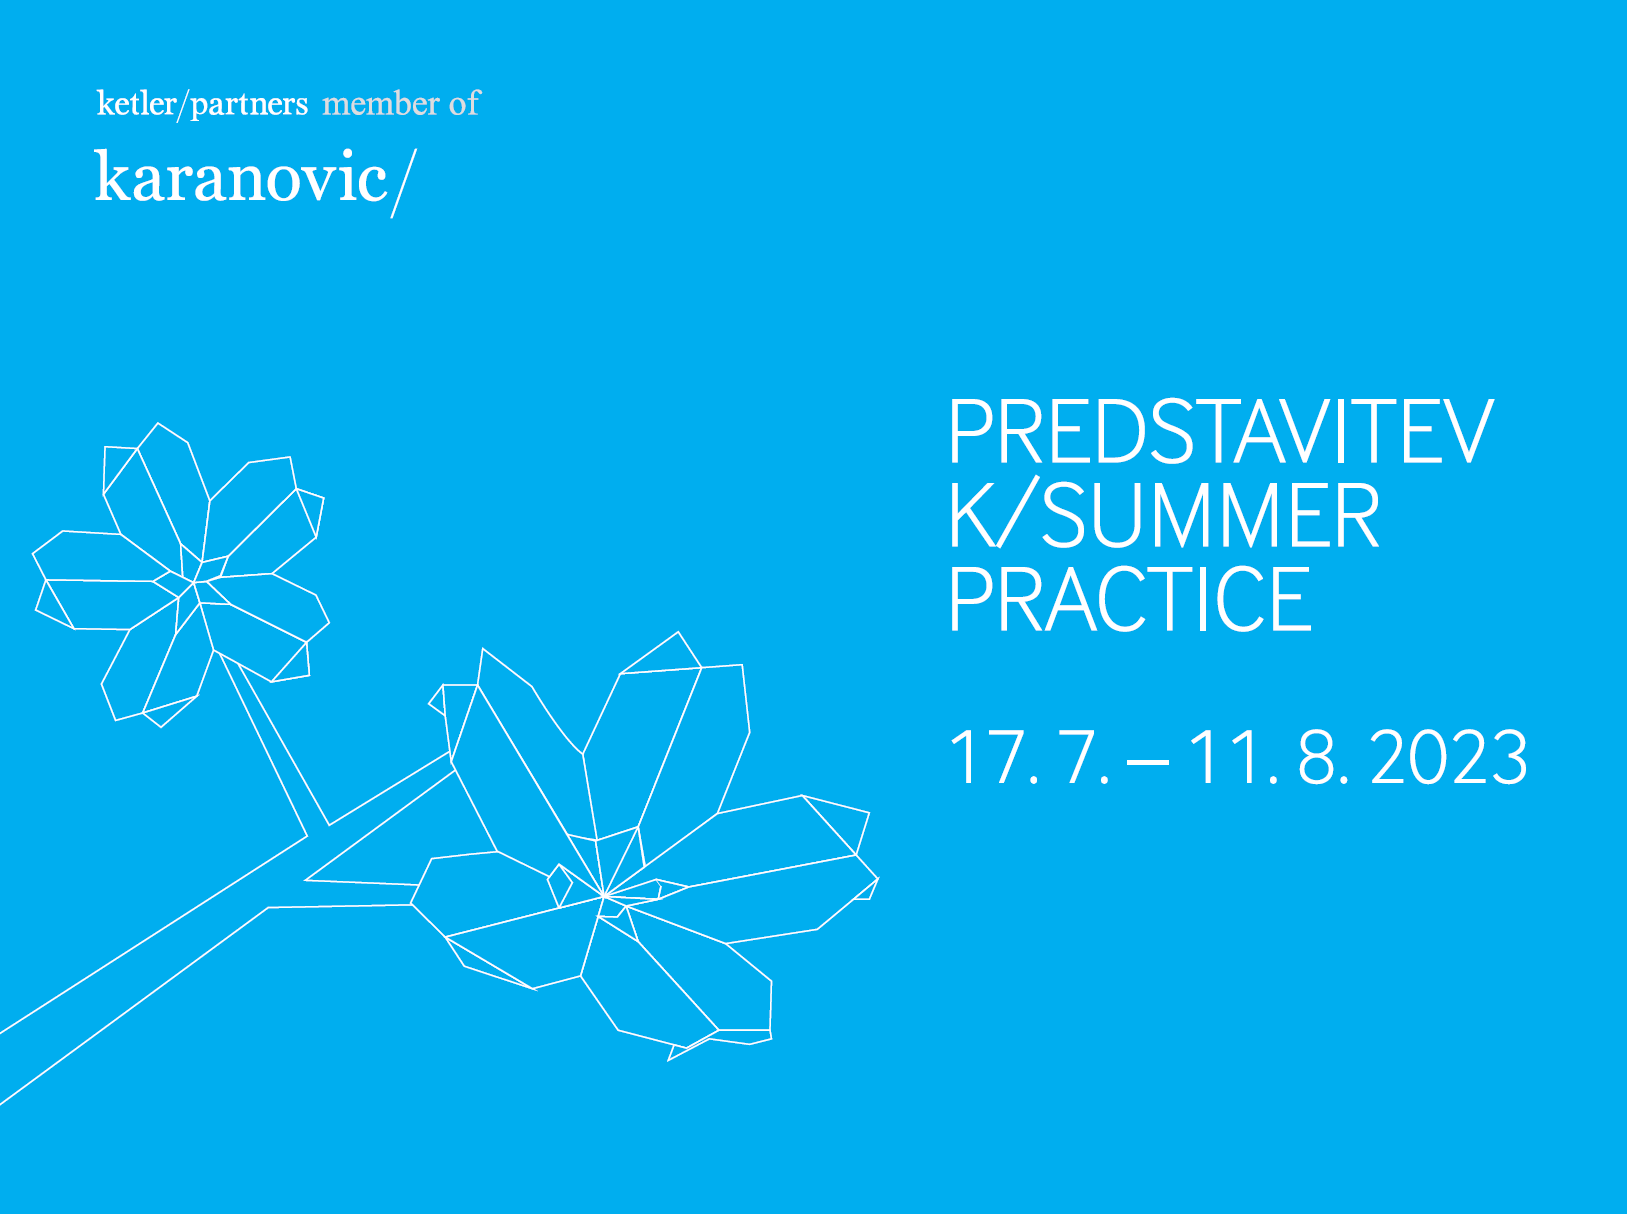 Študentsko delo v odvetniški pisarni (Ljubljana) - K/Summer Practice 2023